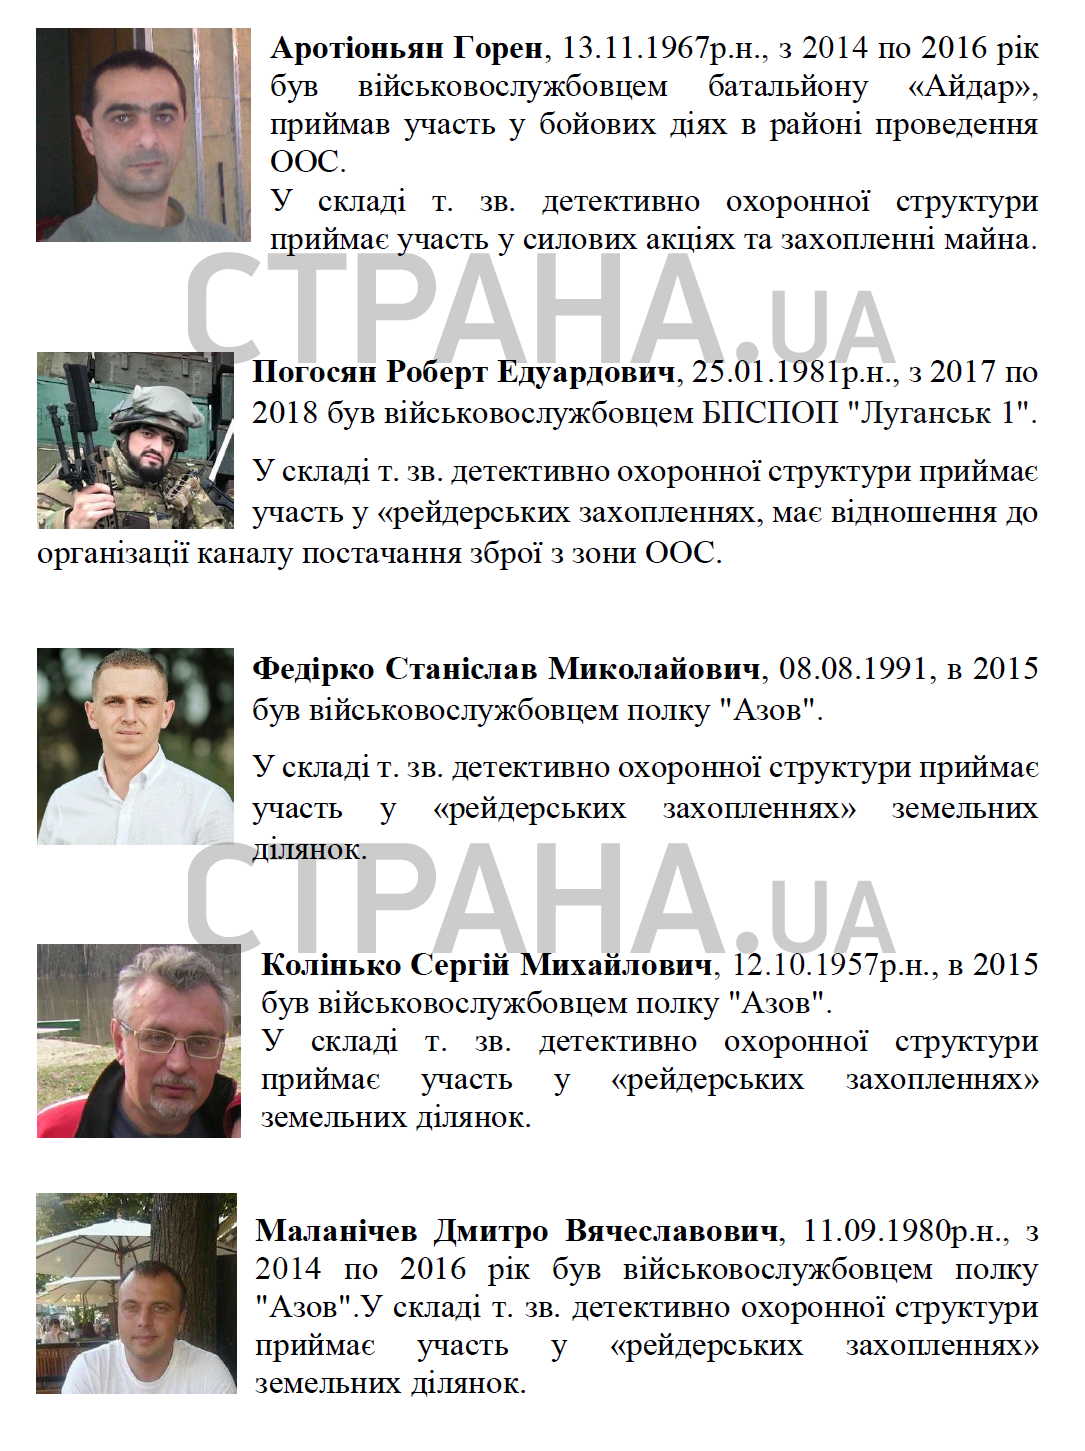 Подозреваемые атошники и бойцы Азова по версии СБУ